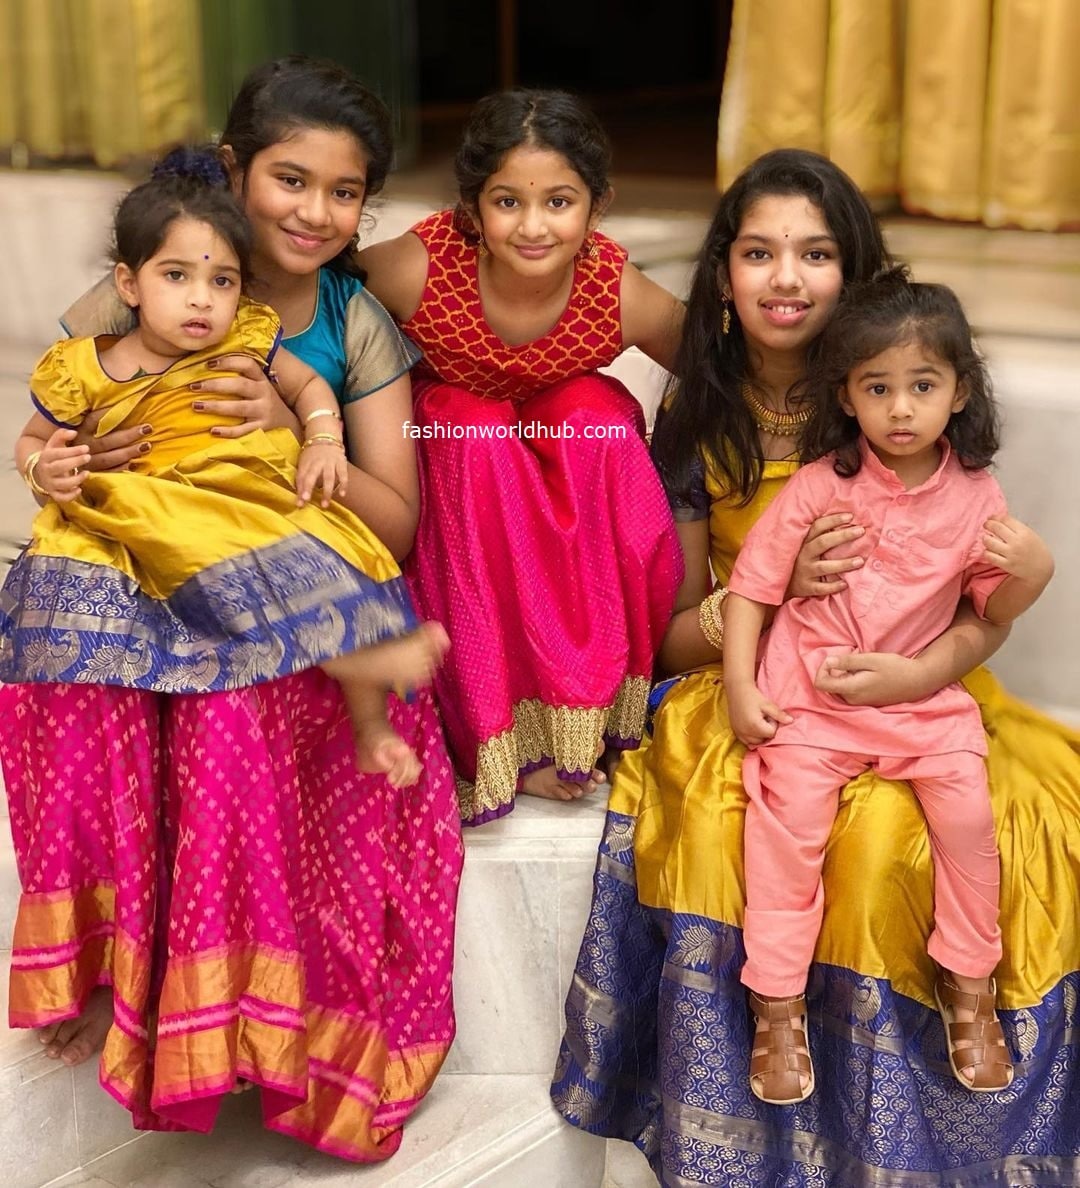 Sreeja Kalyan family Dussehra celebration photos! | Fashionworldhub